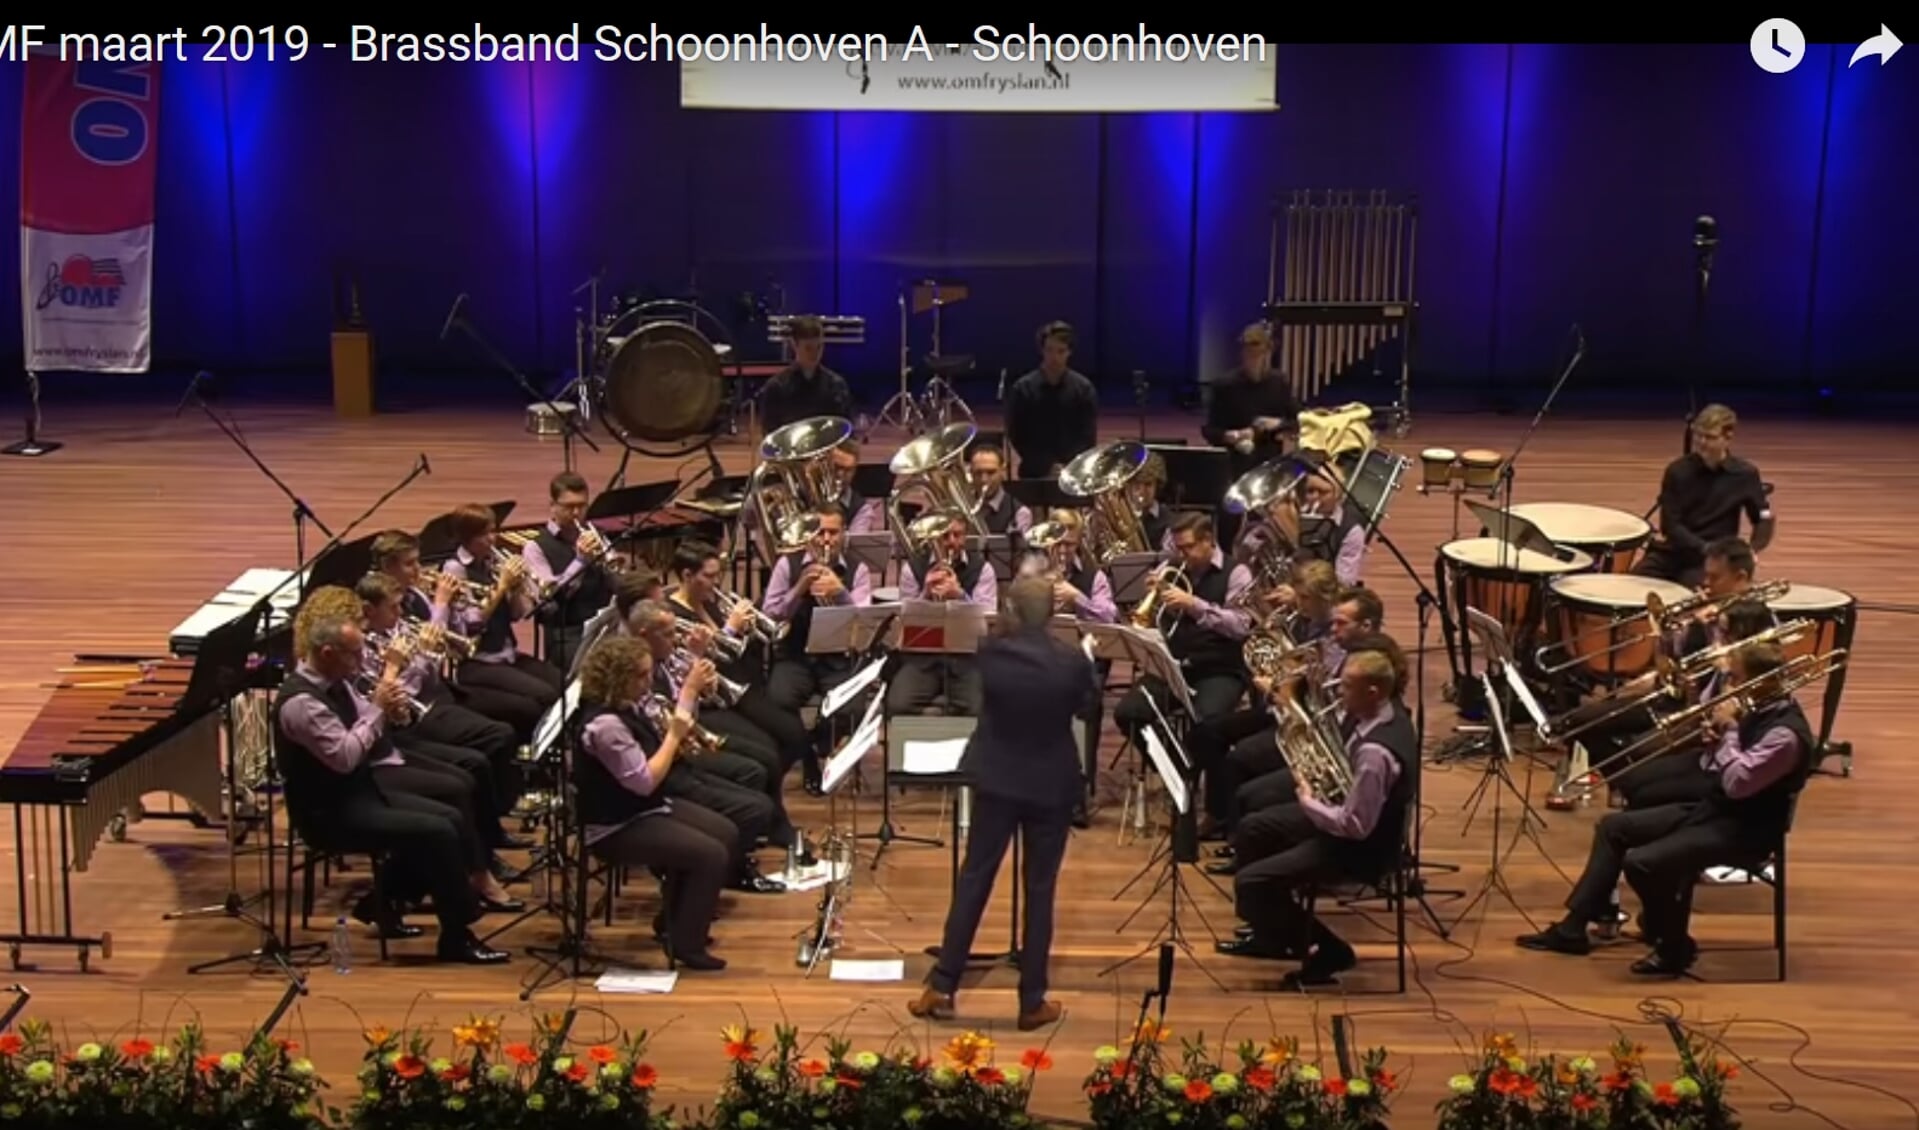 Brass Band Schoonhoven in actie.